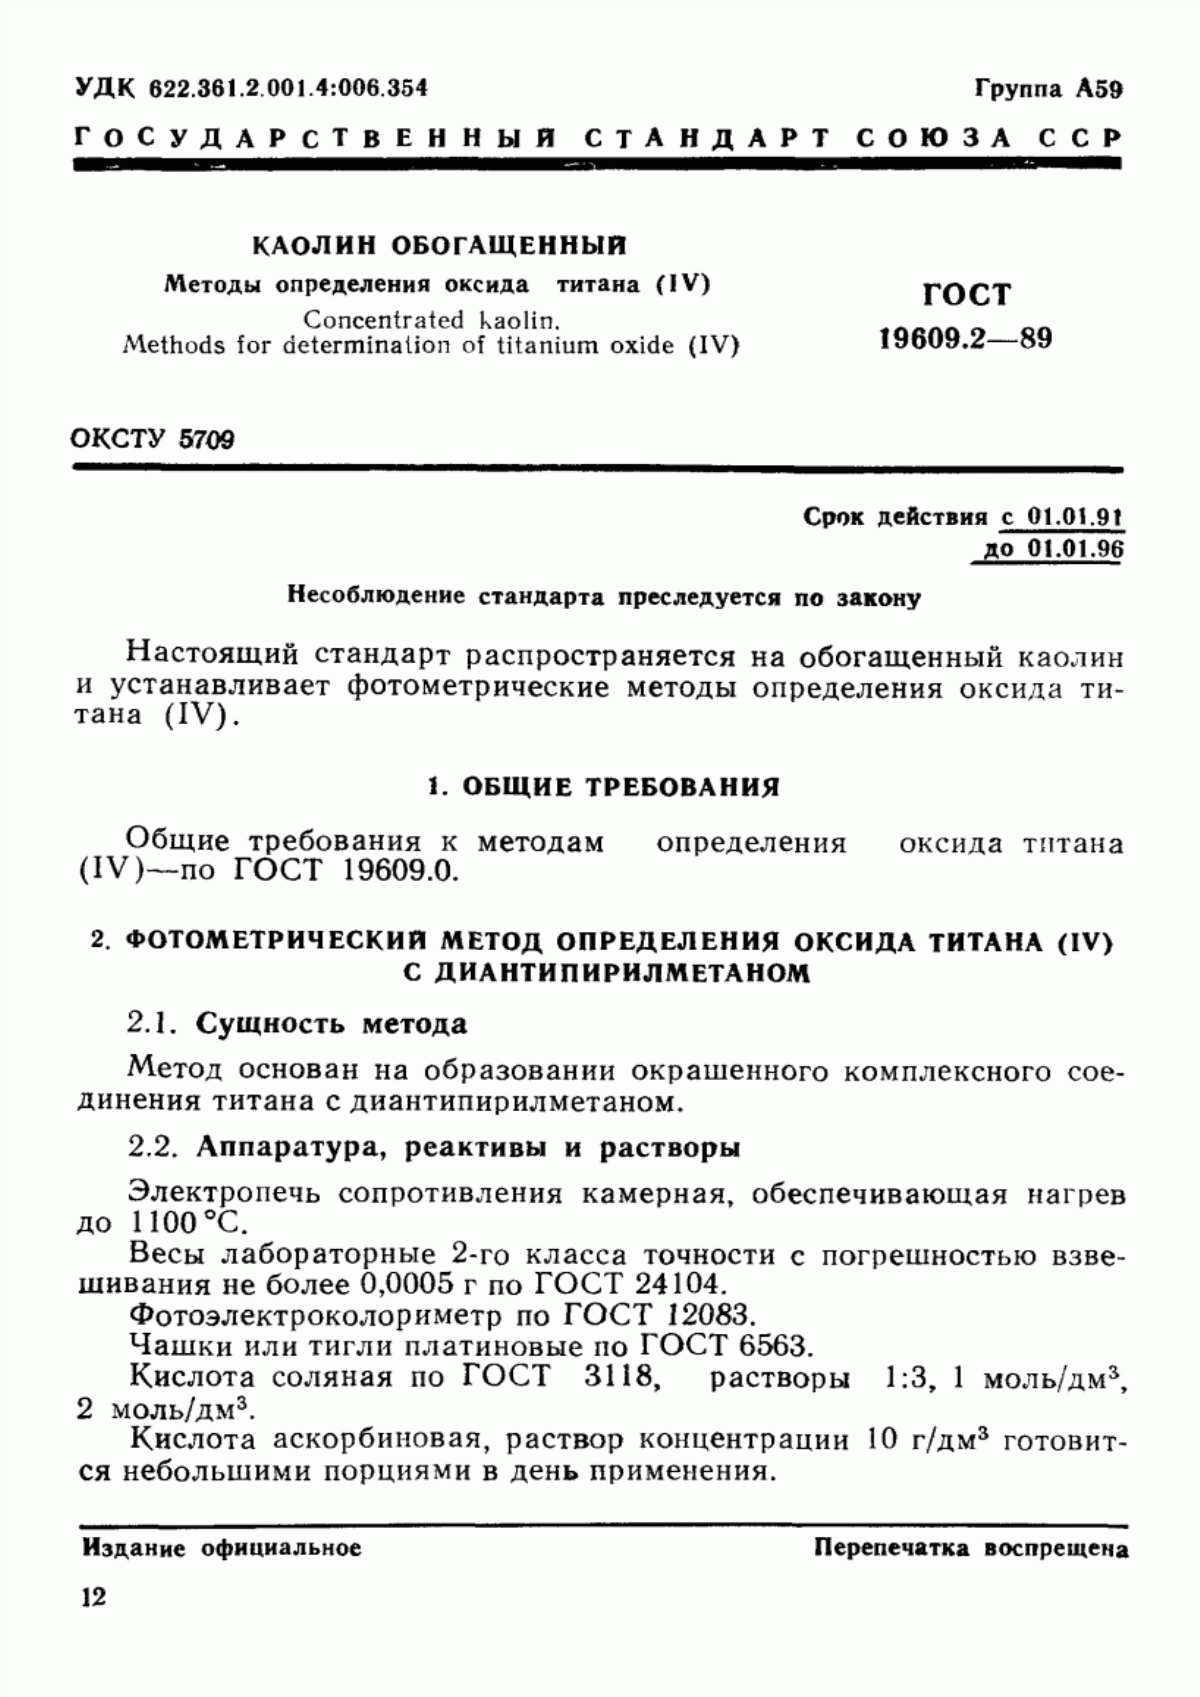 ГОСТ 19609.2-89 Каолин обогащенный. Методы определения оксида титана (IV)